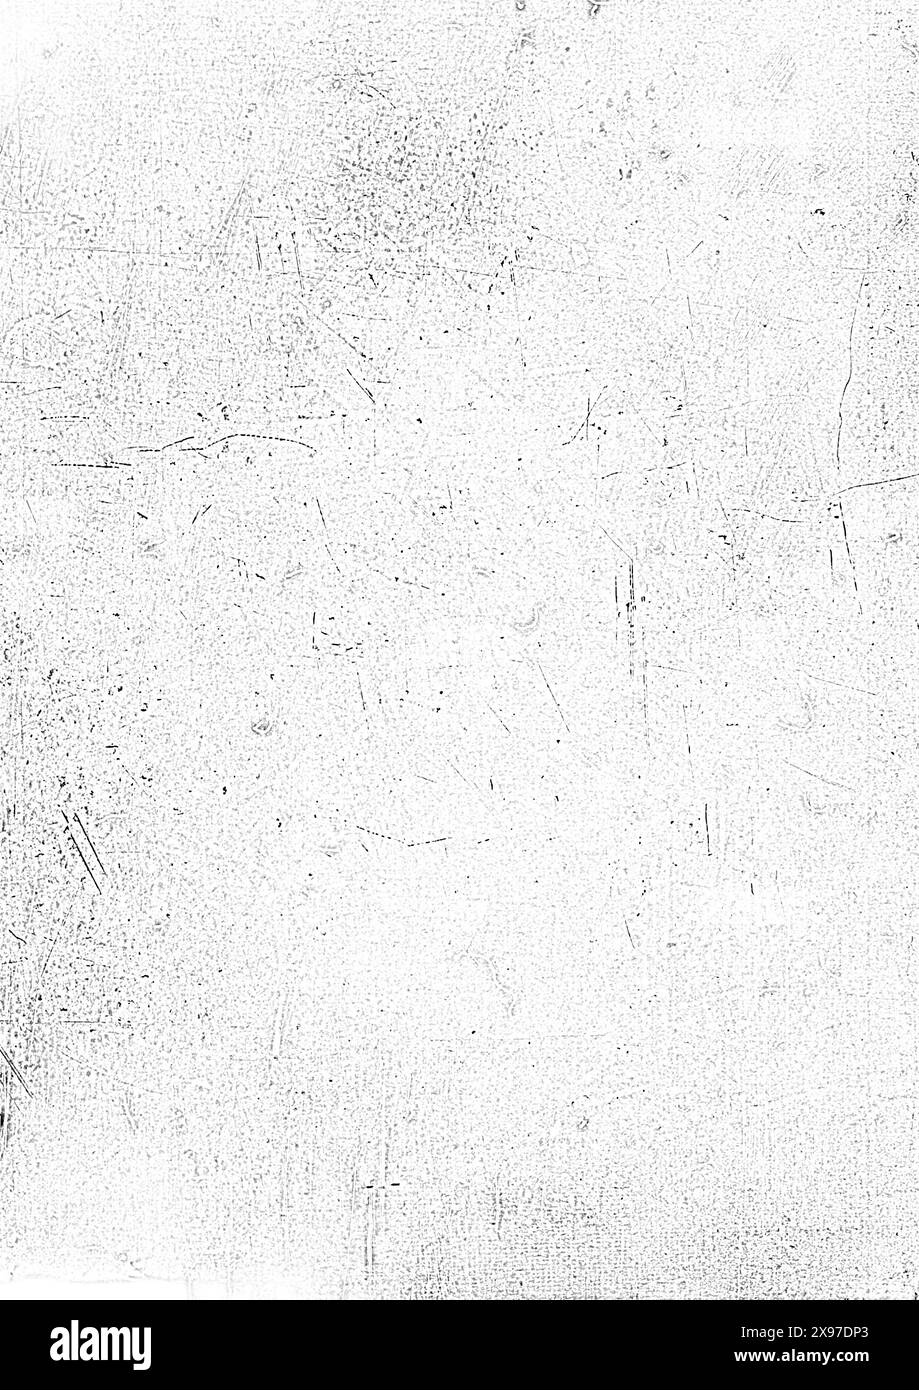 Eine verstörte schwarz-weiße Textur mit Kratzern und rauen Oberflächen, die ein abstraktes Grunge-Erscheinungsbild erzeugt Stockfoto